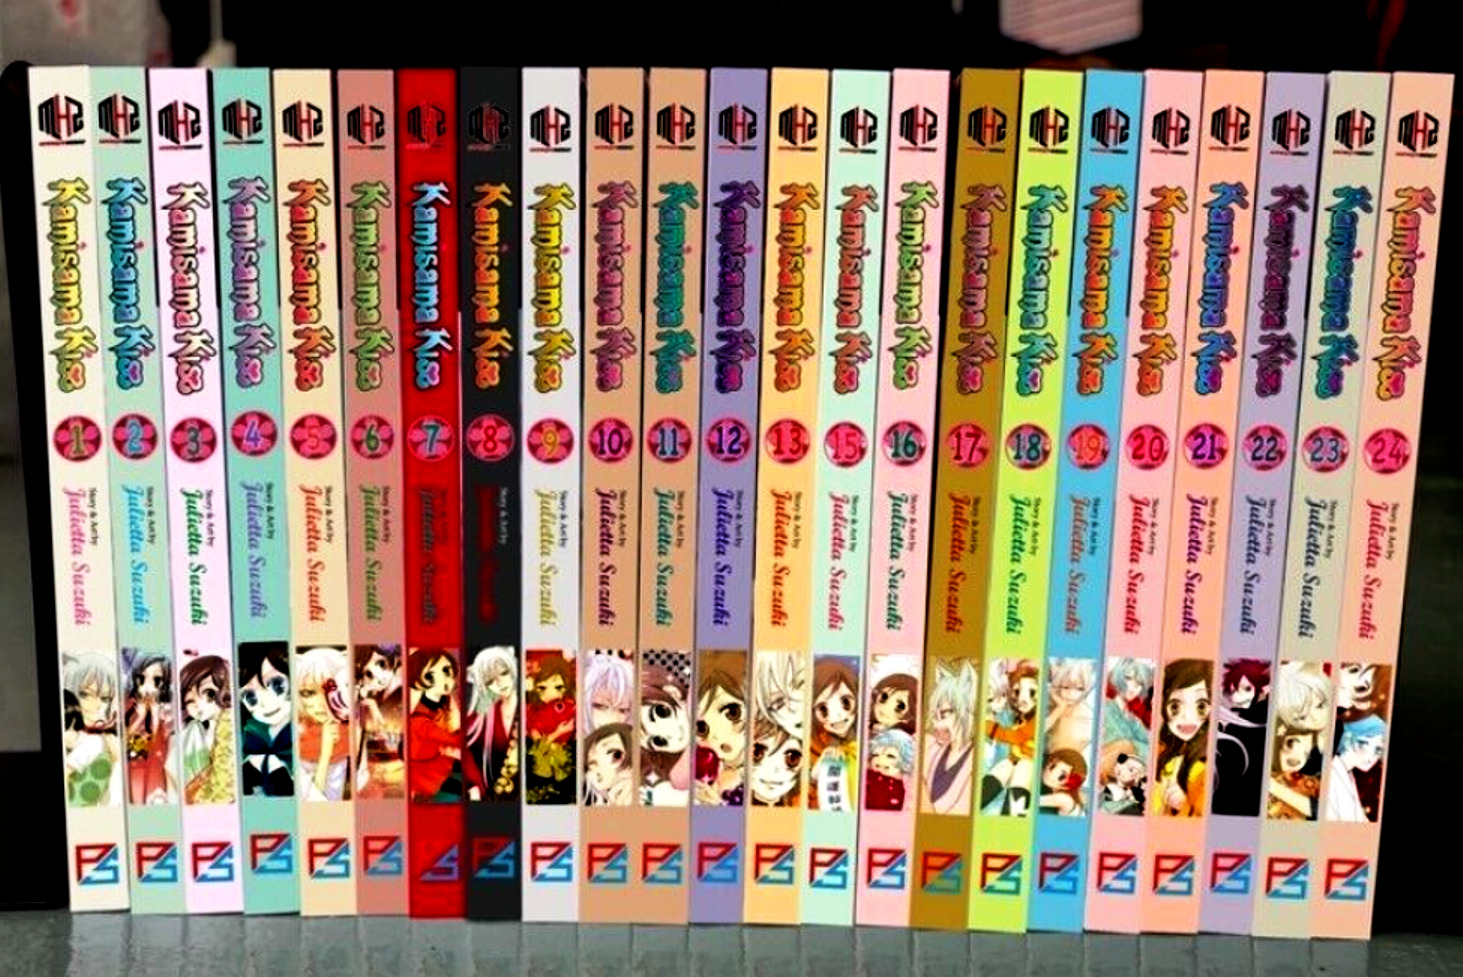 Kamisama Kiss Julietta Suzuki Manga Vol.1-25 Complete Set English Version Comic